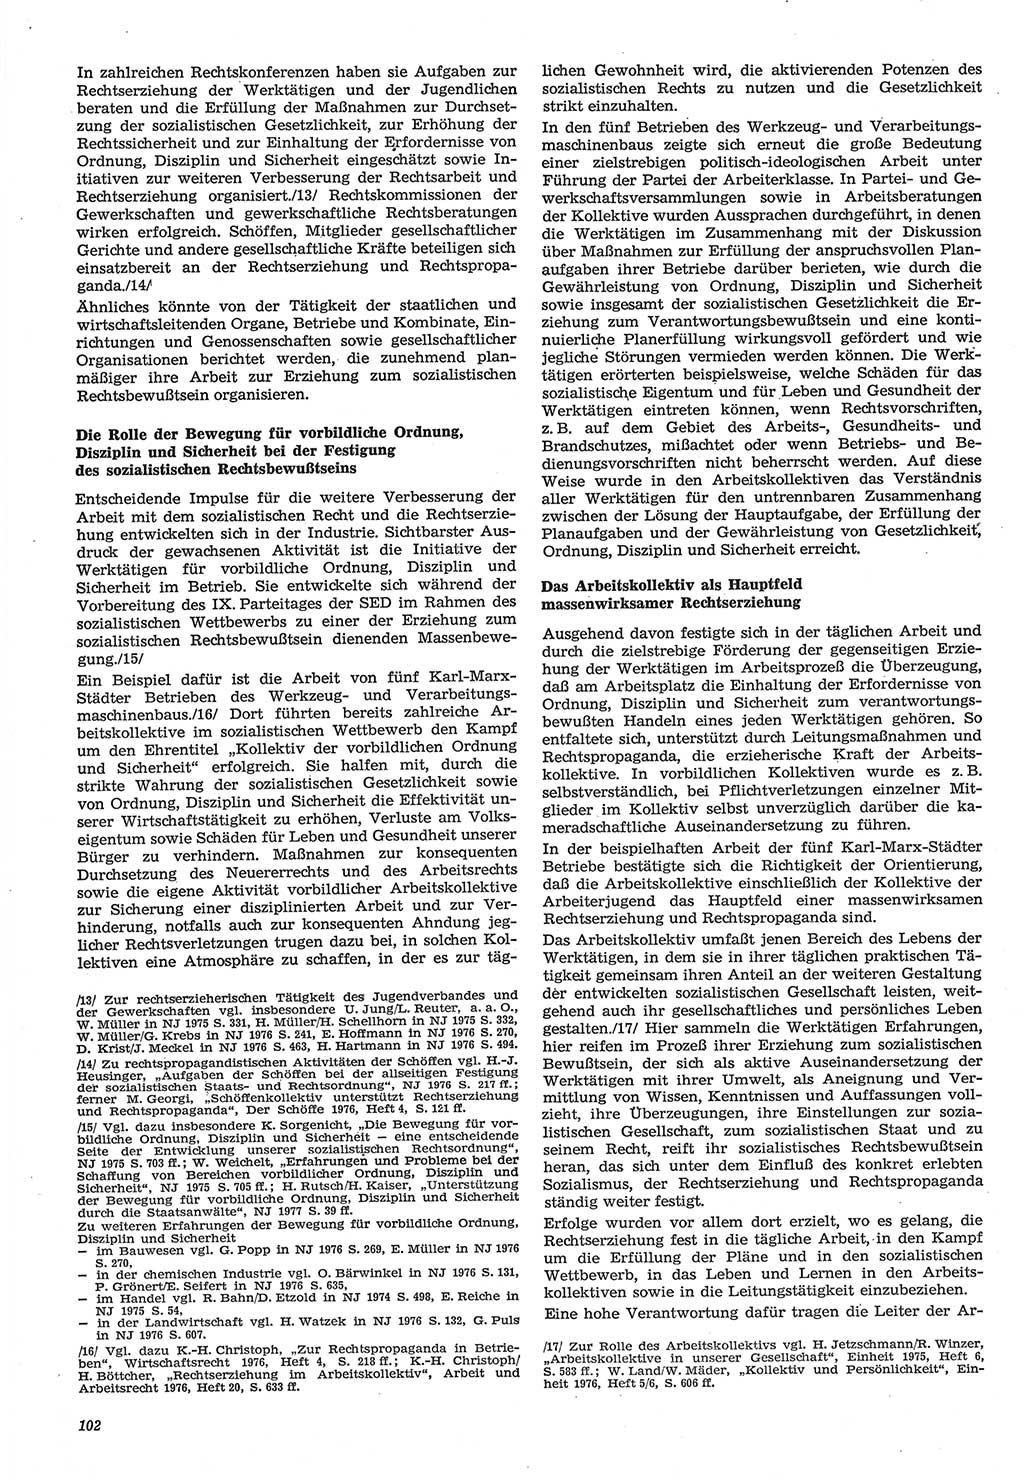 Neue Justiz (NJ), Zeitschrift für Recht und Rechtswissenschaft-Zeitschrift, sozialistisches Recht und Gesetzlichkeit, 31. Jahrgang 1977, Seite 102 (NJ DDR 1977, S. 102)